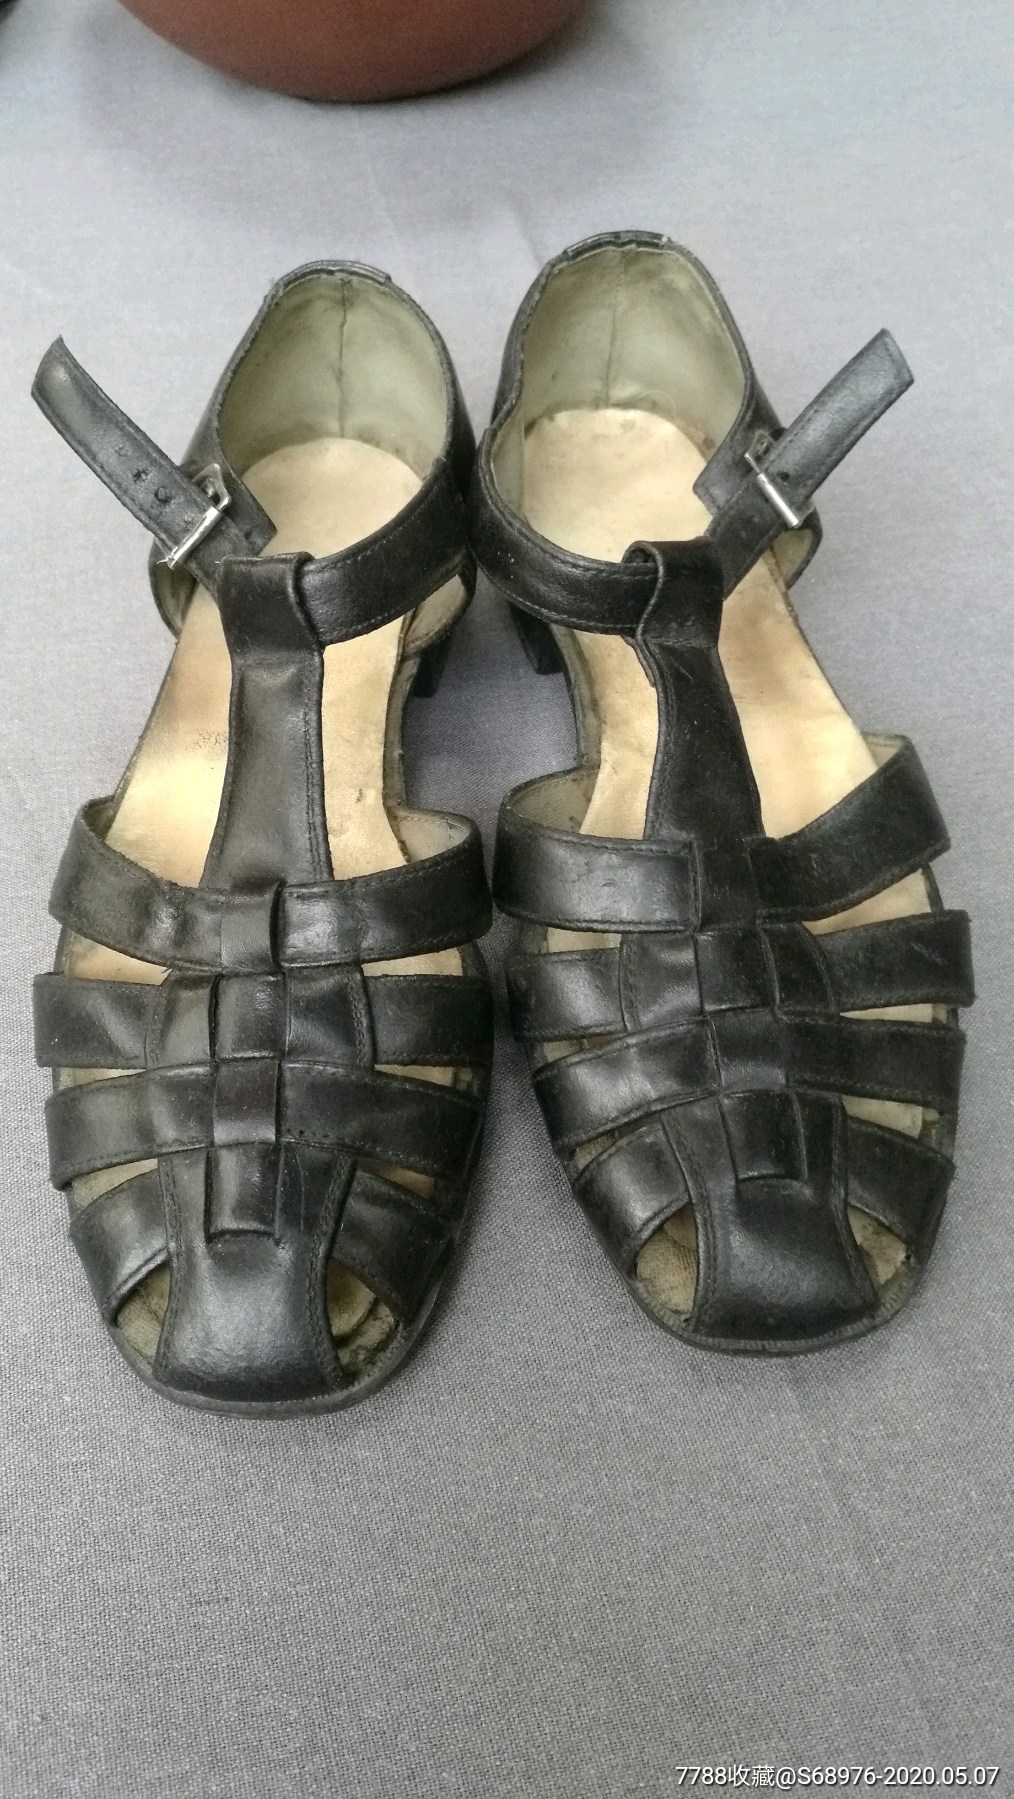 老皮凉鞋六七十年代八带皮凉鞋年代戏影视道具可用可藏夏天穿清凉一夏